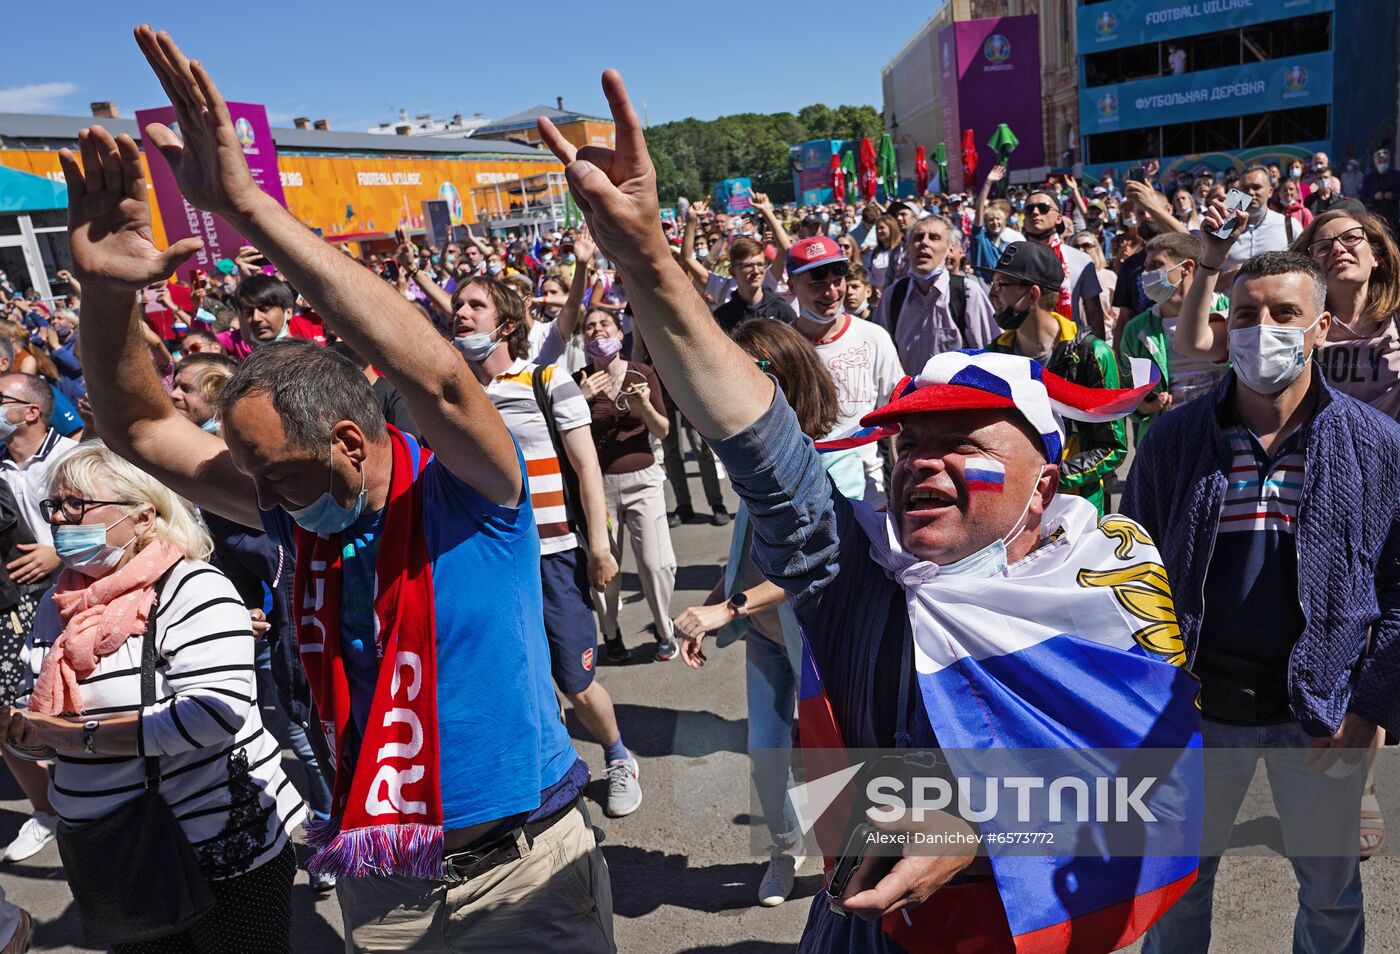 Russia Soccer Euro 2020 Finland - Russia Broadcasting